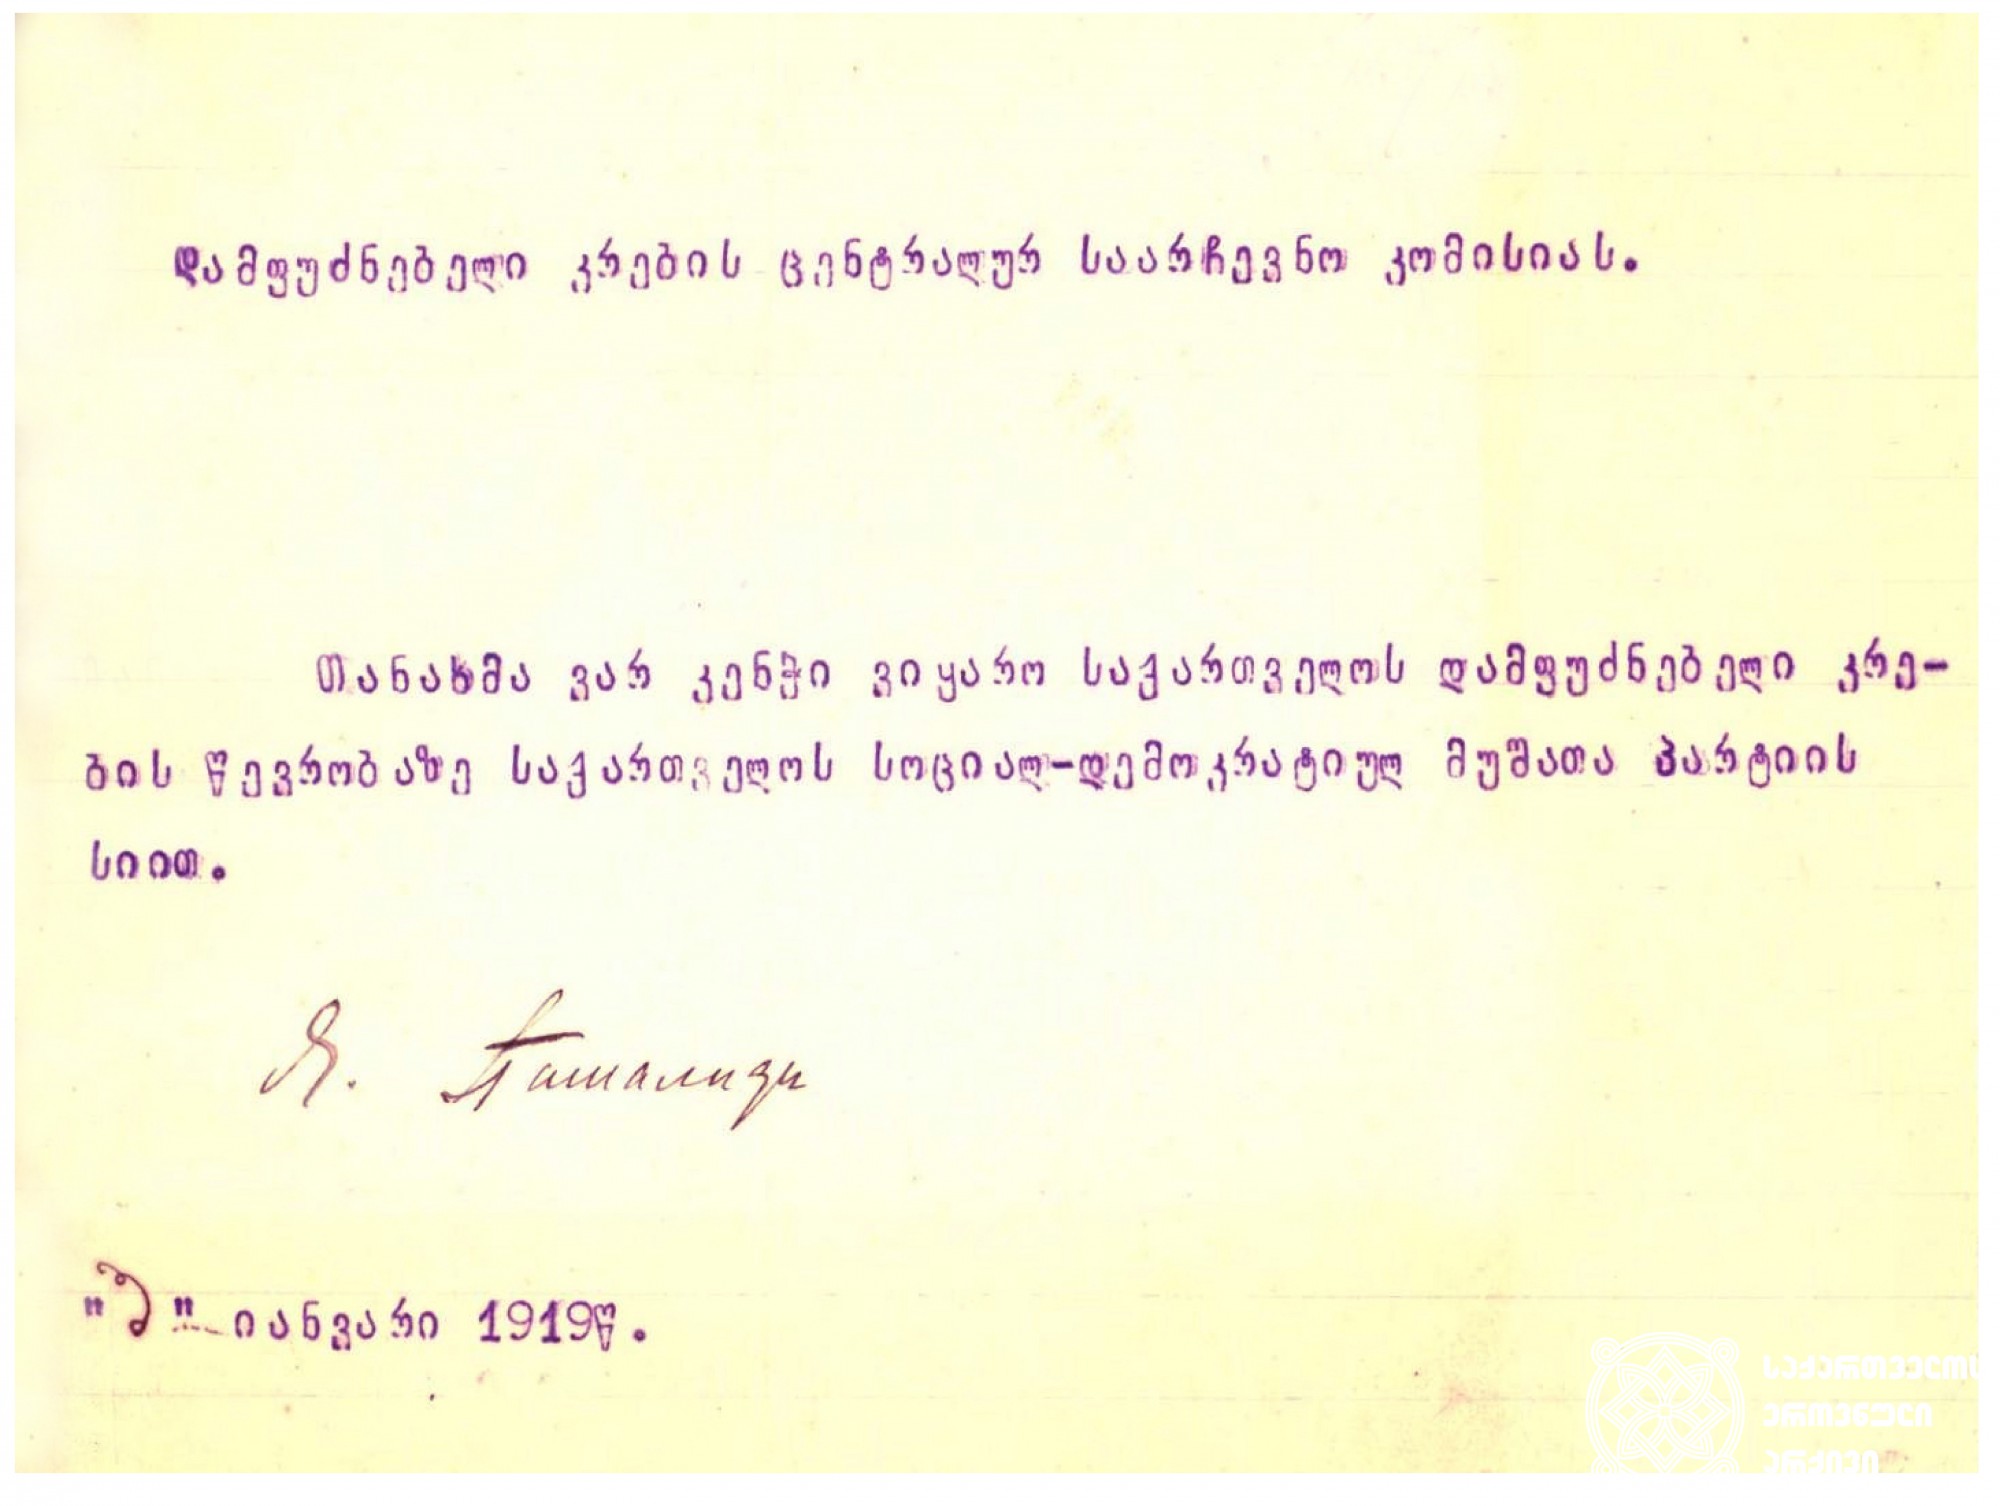 იოანის ფაშალიდისის თანხმობის წერილი საქართველოს სოციალ-დემოკრატიული მუშათა პარტიის სახელით არჩევნებში მონაწილეობის შესახებ
1919 წლის 3 იანვარი. <br>
Letter of Consent from Ioannis Passalidis on participation in the Elections on behalf of the Georgian Social-Democratic Workers' Party. <br>
January 3, 1919.